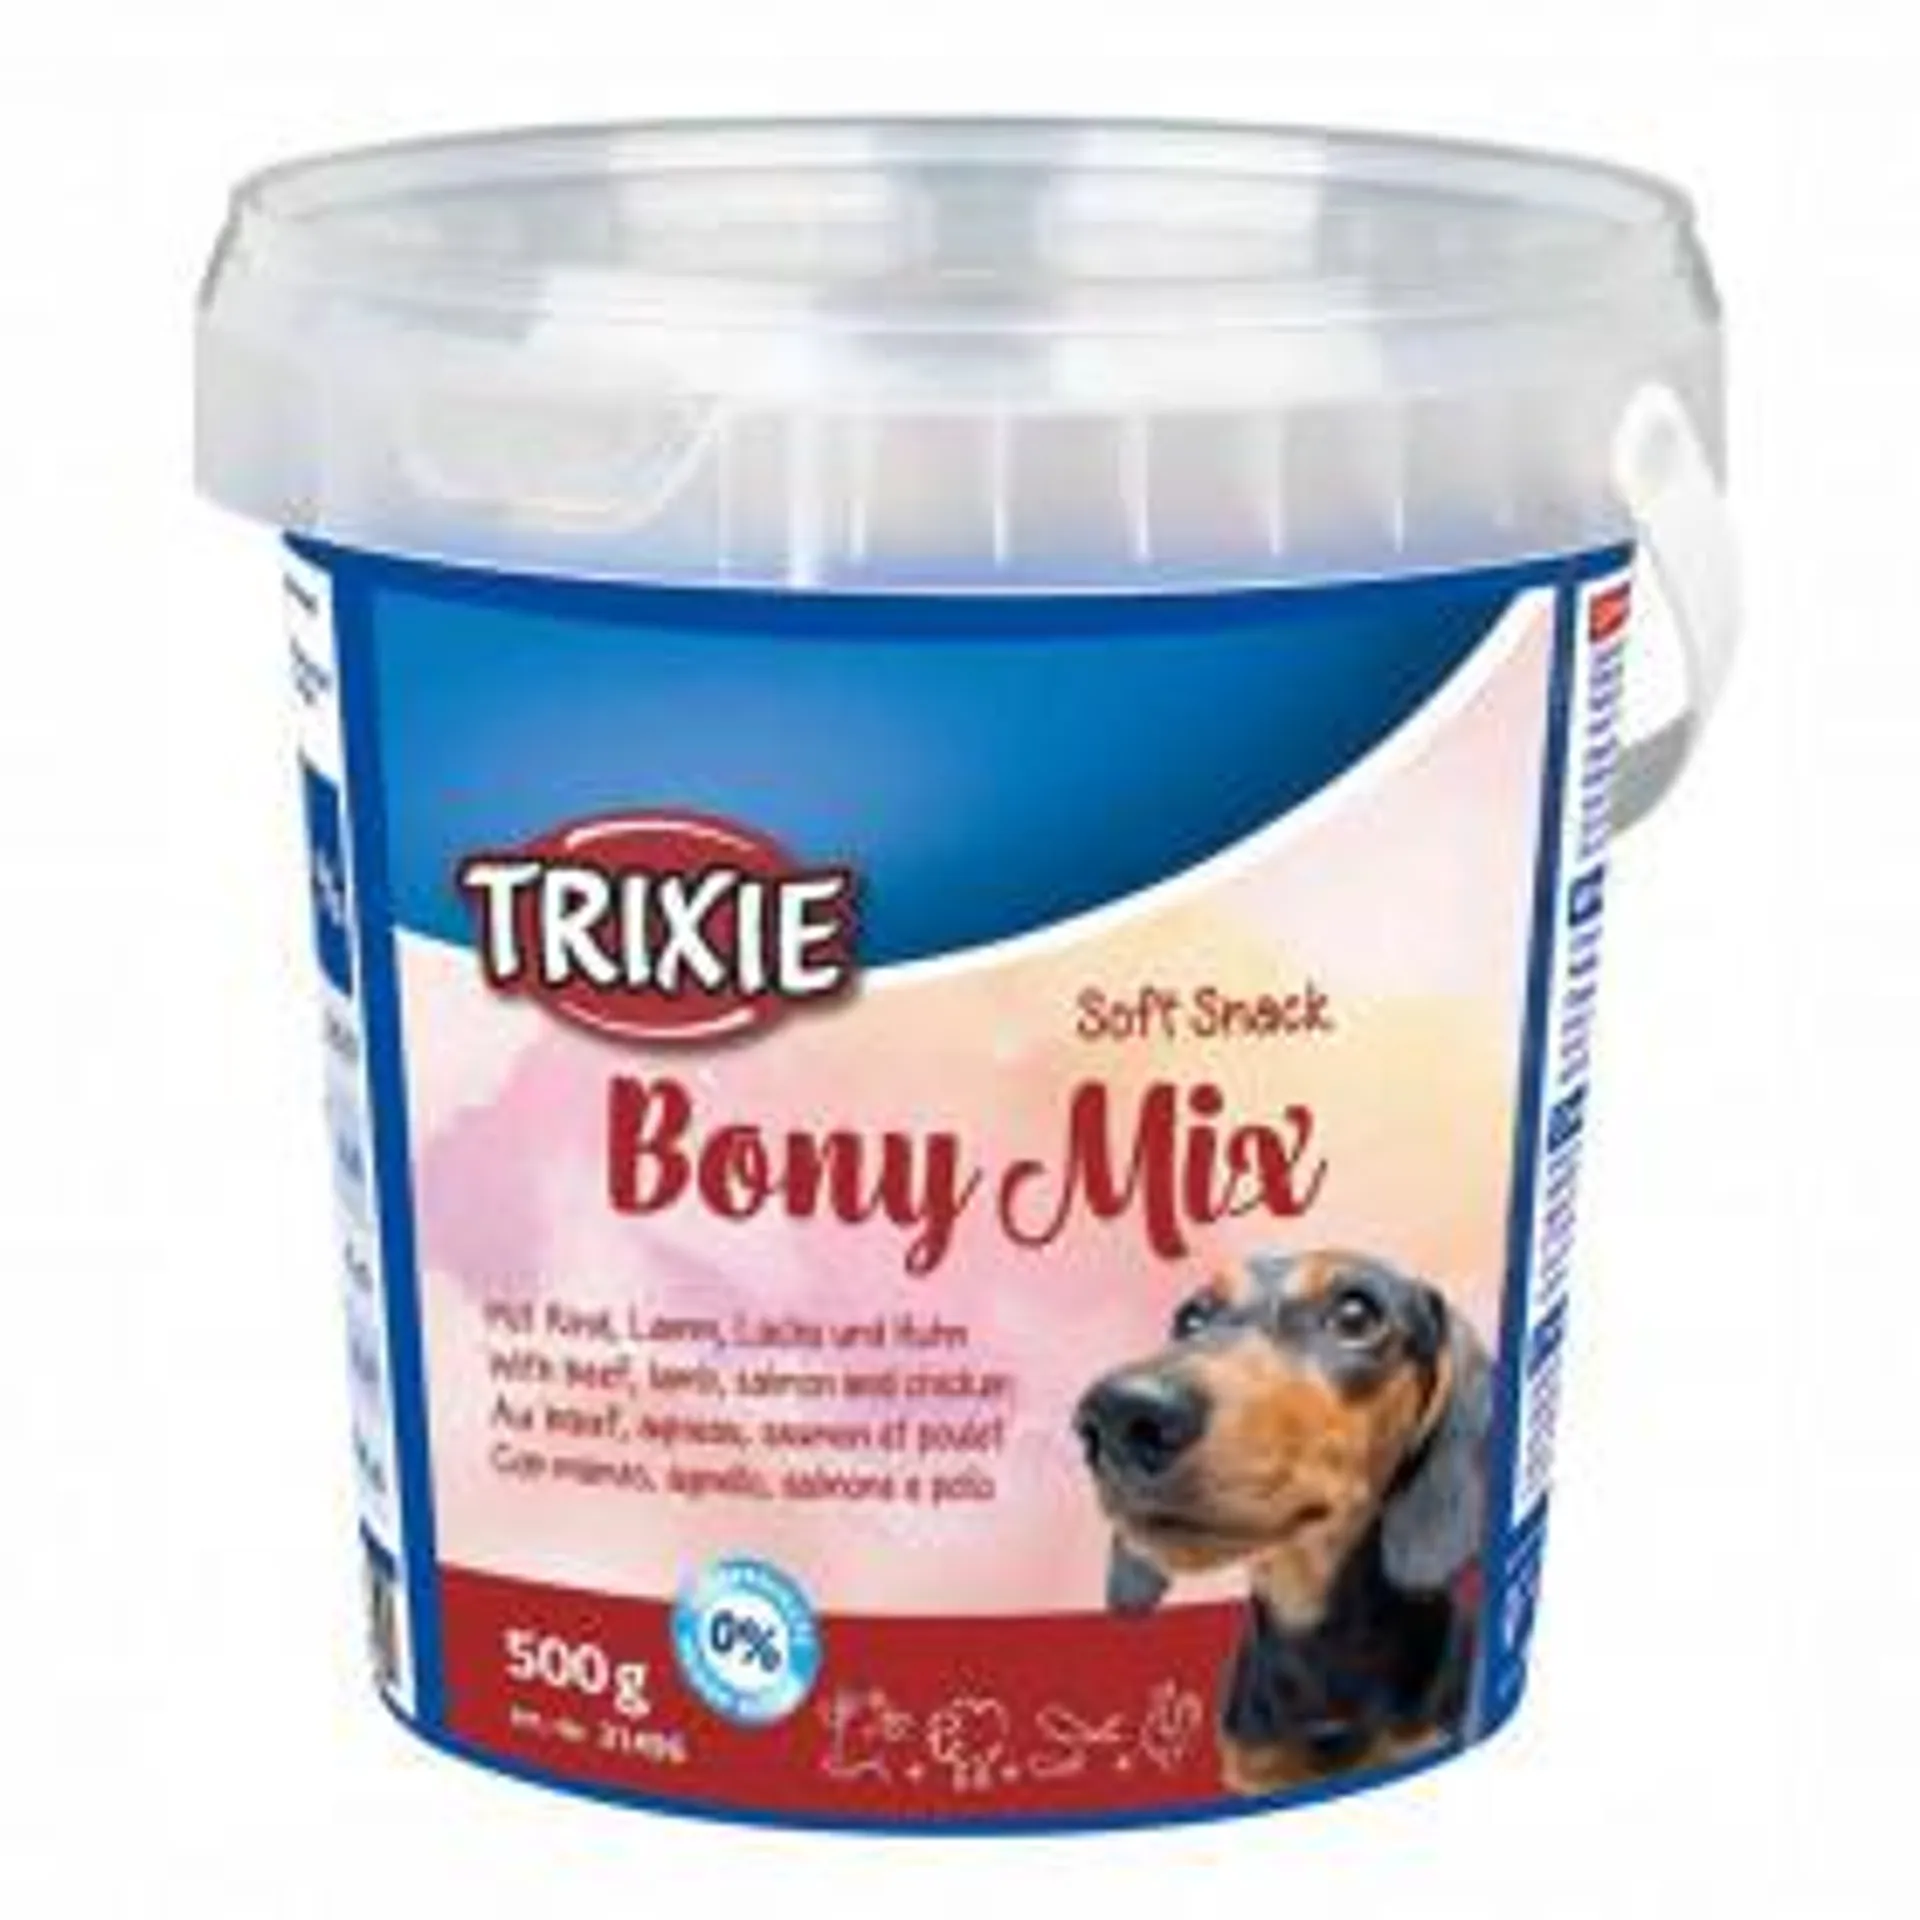 Trixie Soft Snack Bony Mix con pollo, salmón, cordero y ternera